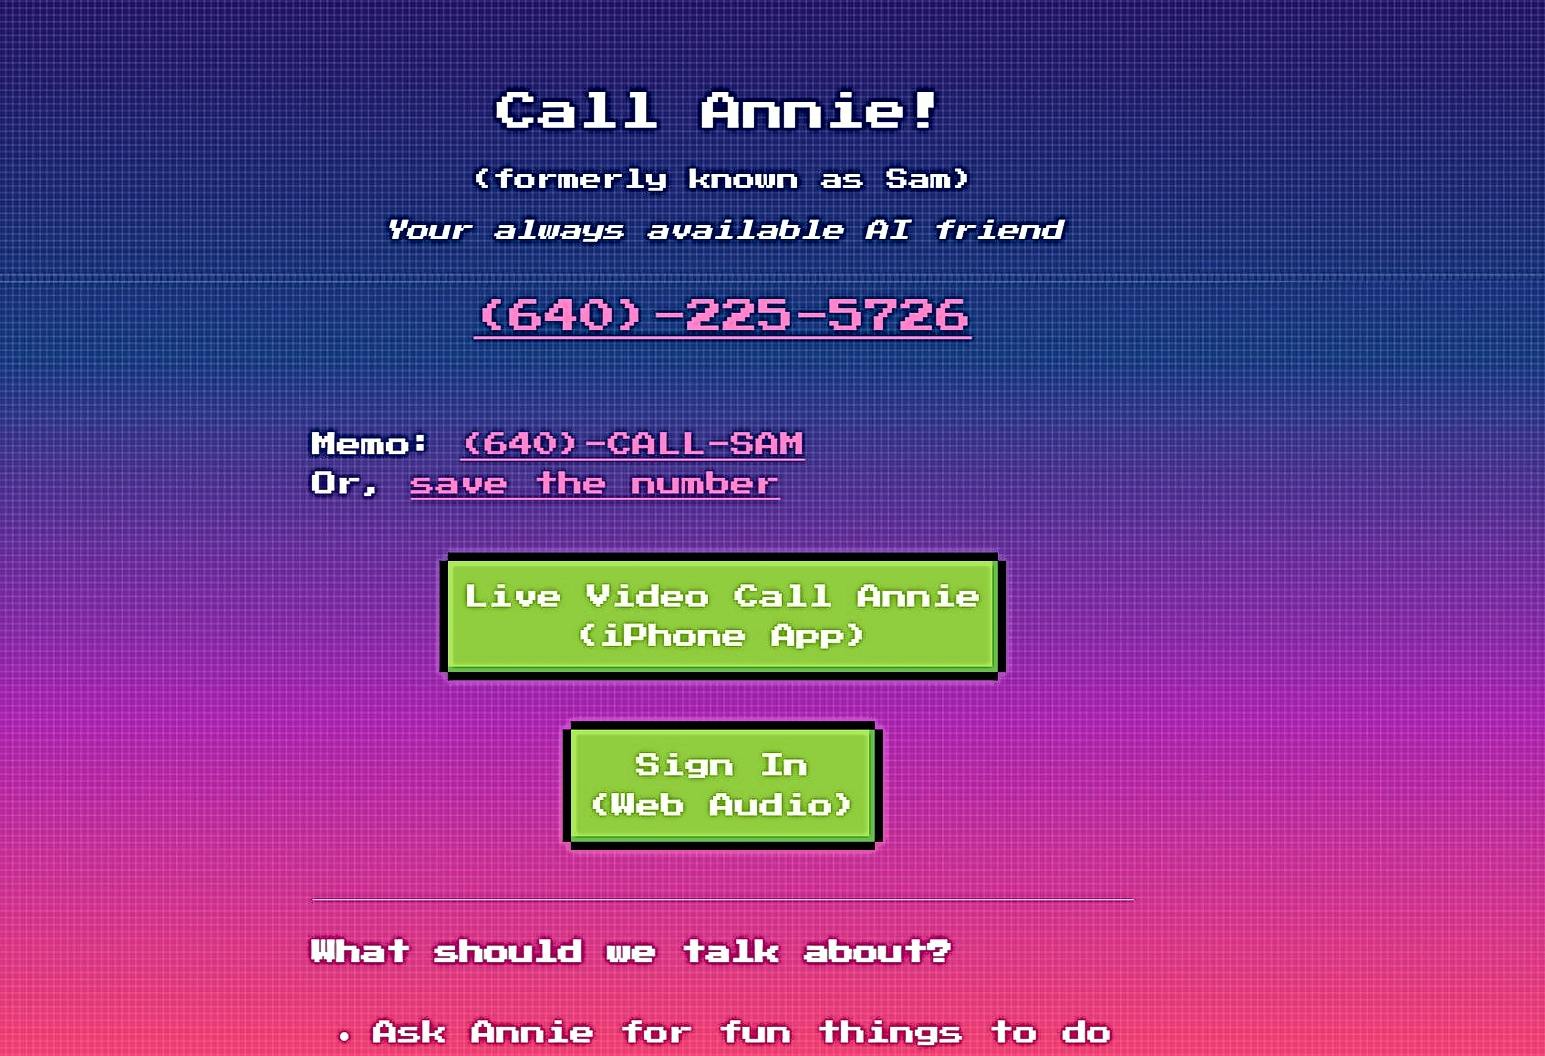 Call Annie featured